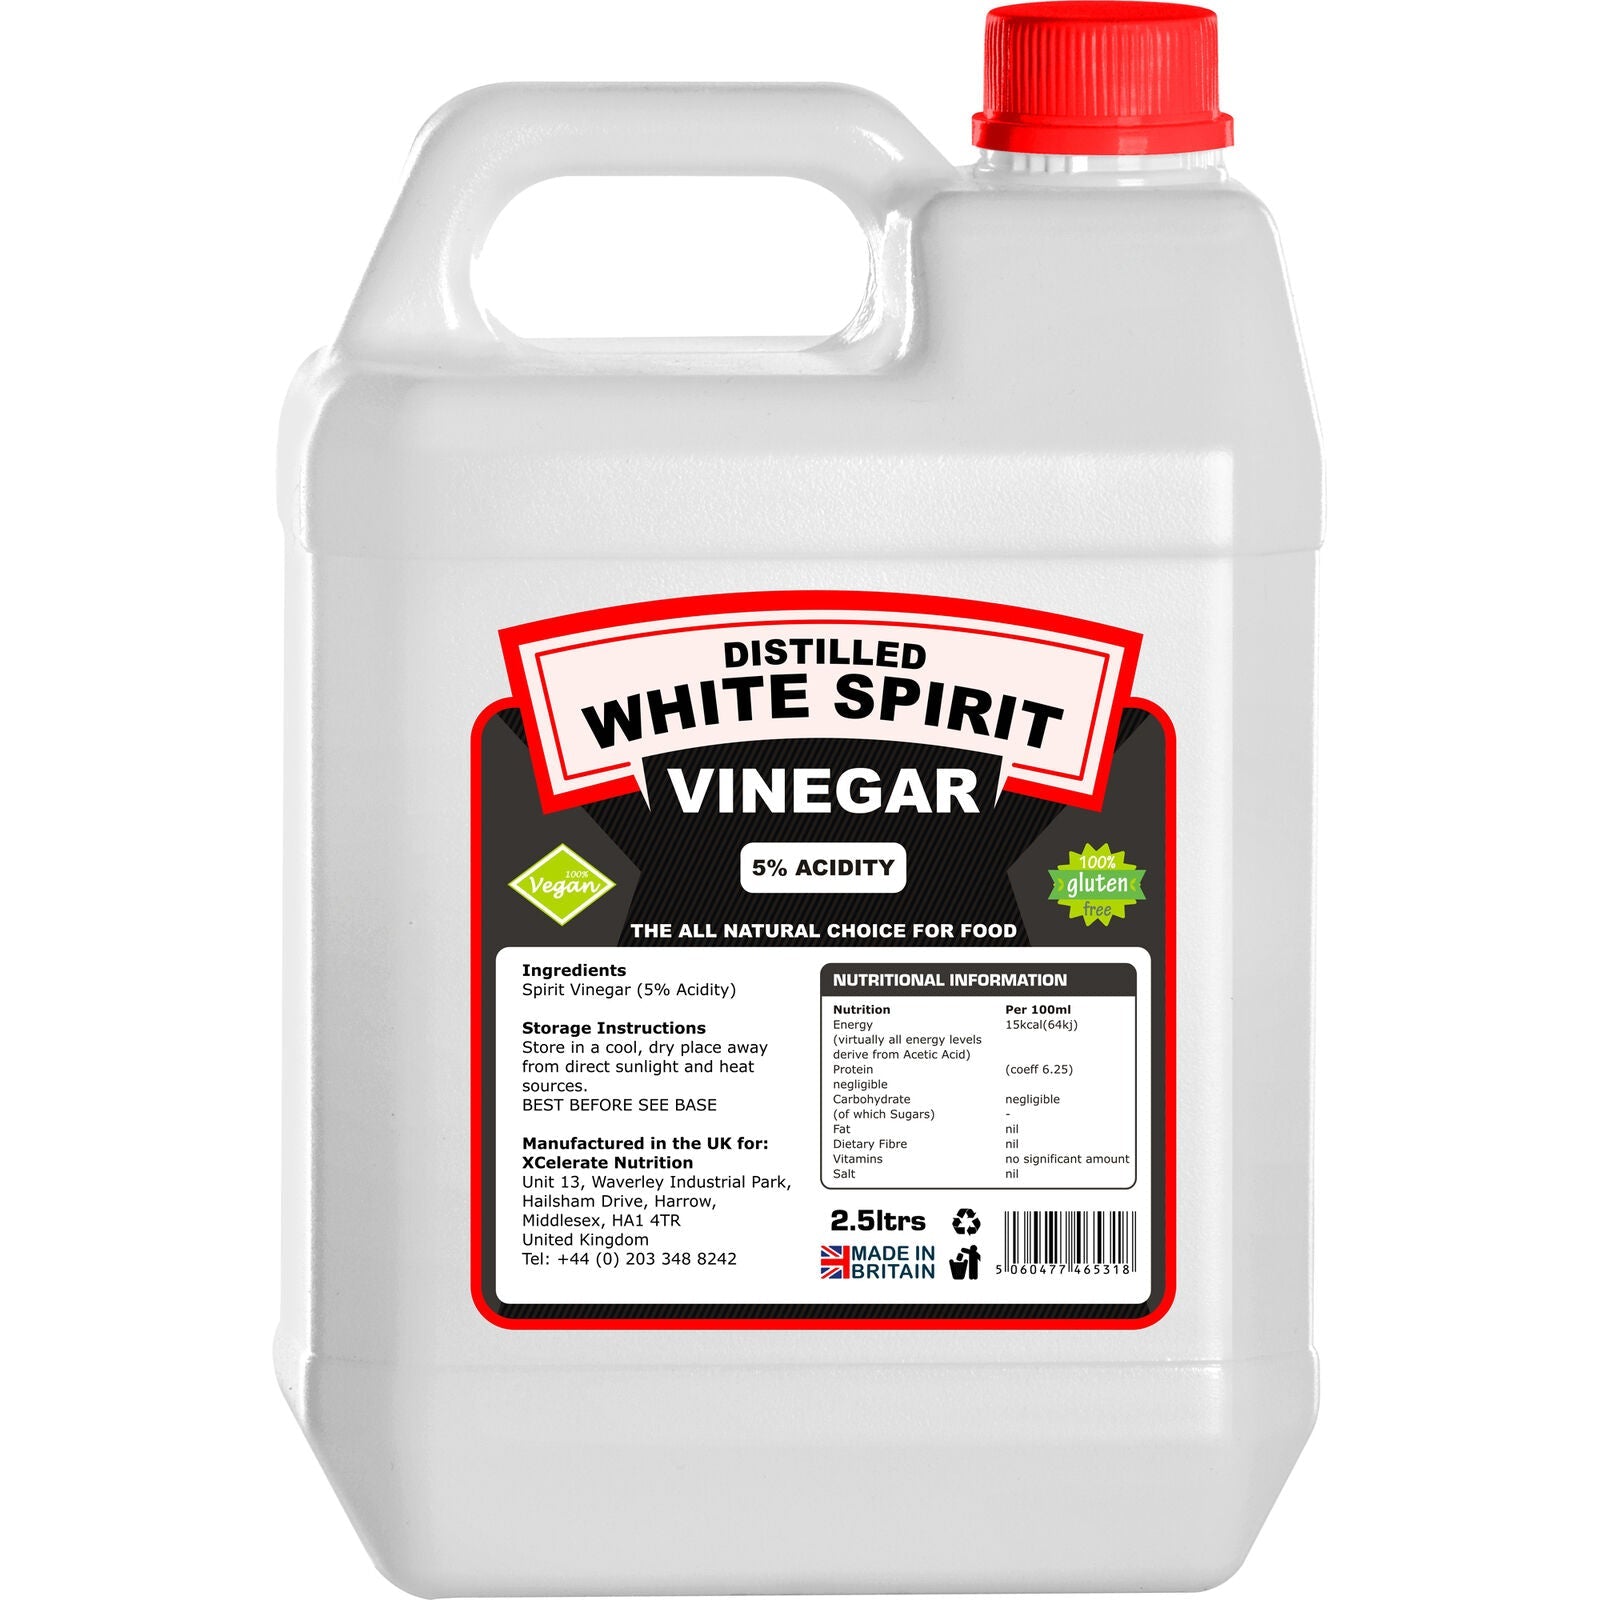 XCelerate Nutrition Distilled White Spirit Vinegar